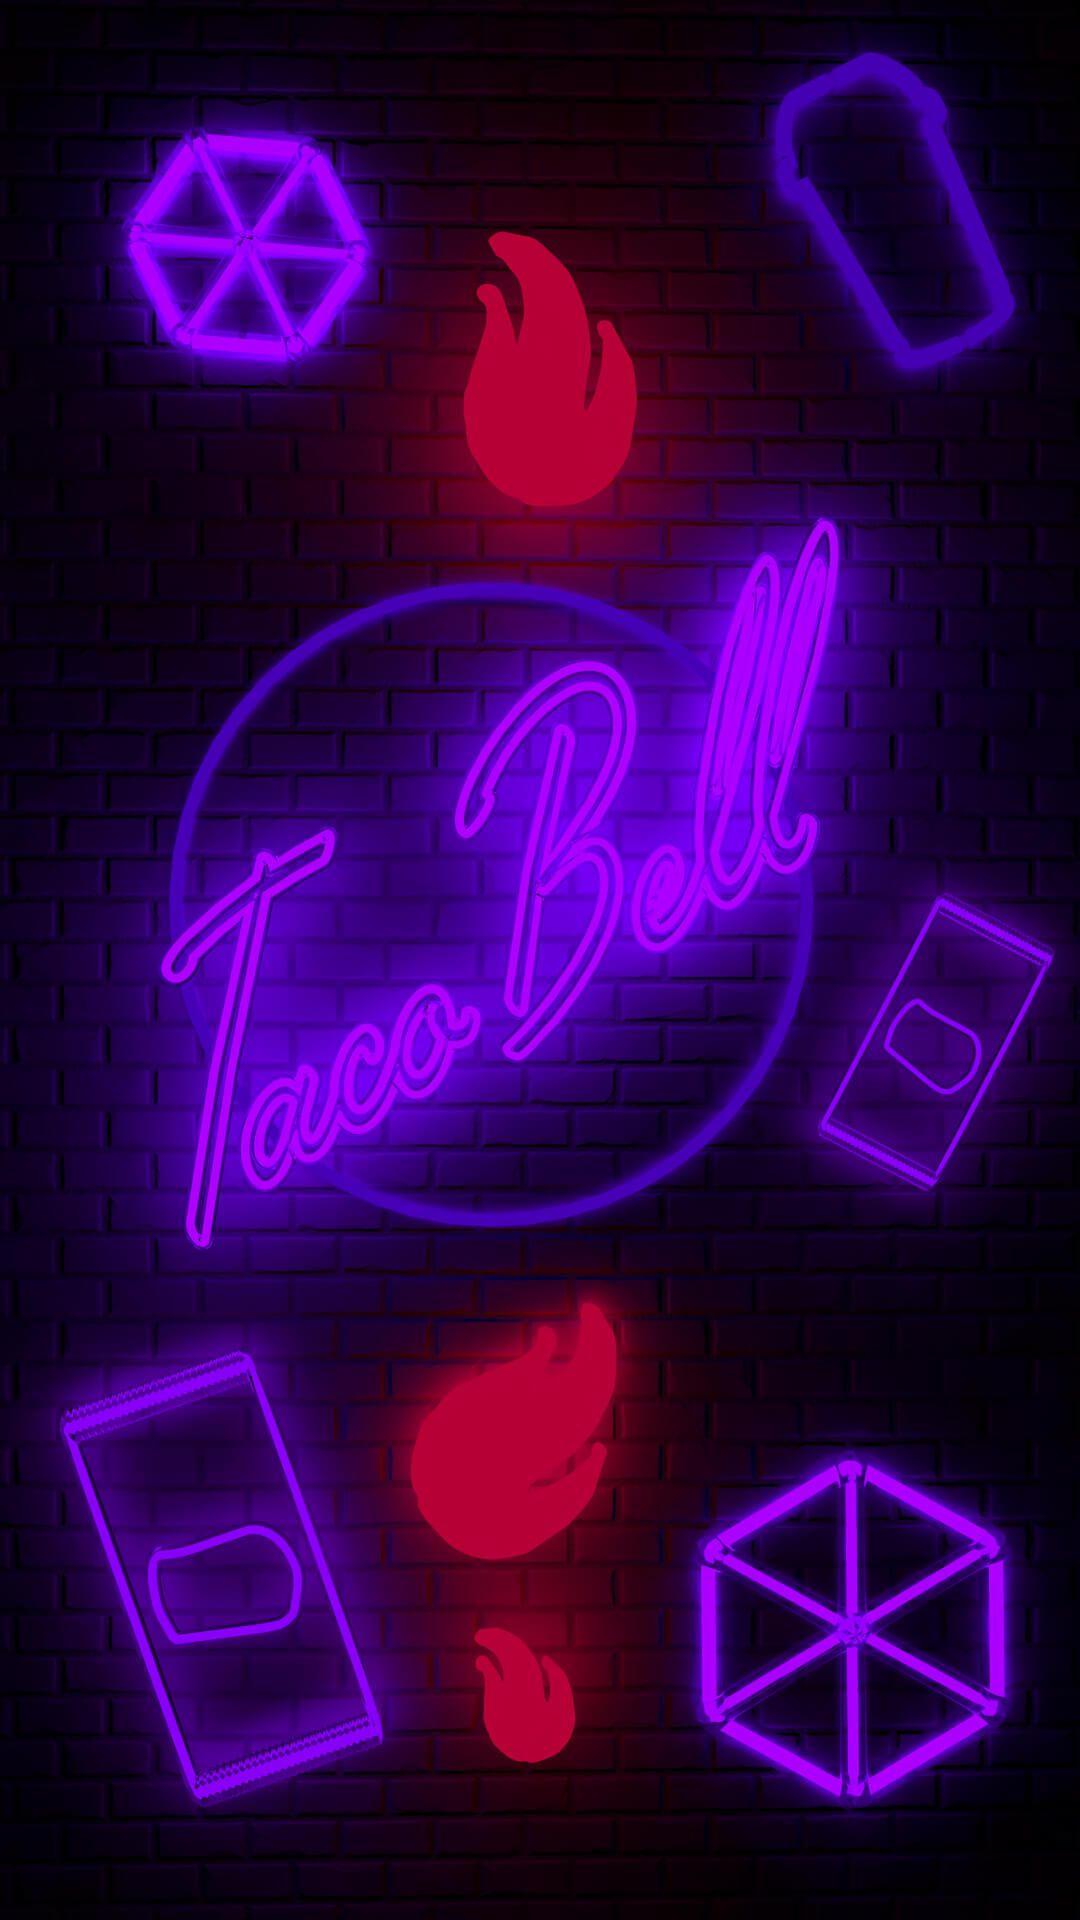 Taco bell wallpaper ads creative wallpaper phone wallpaper